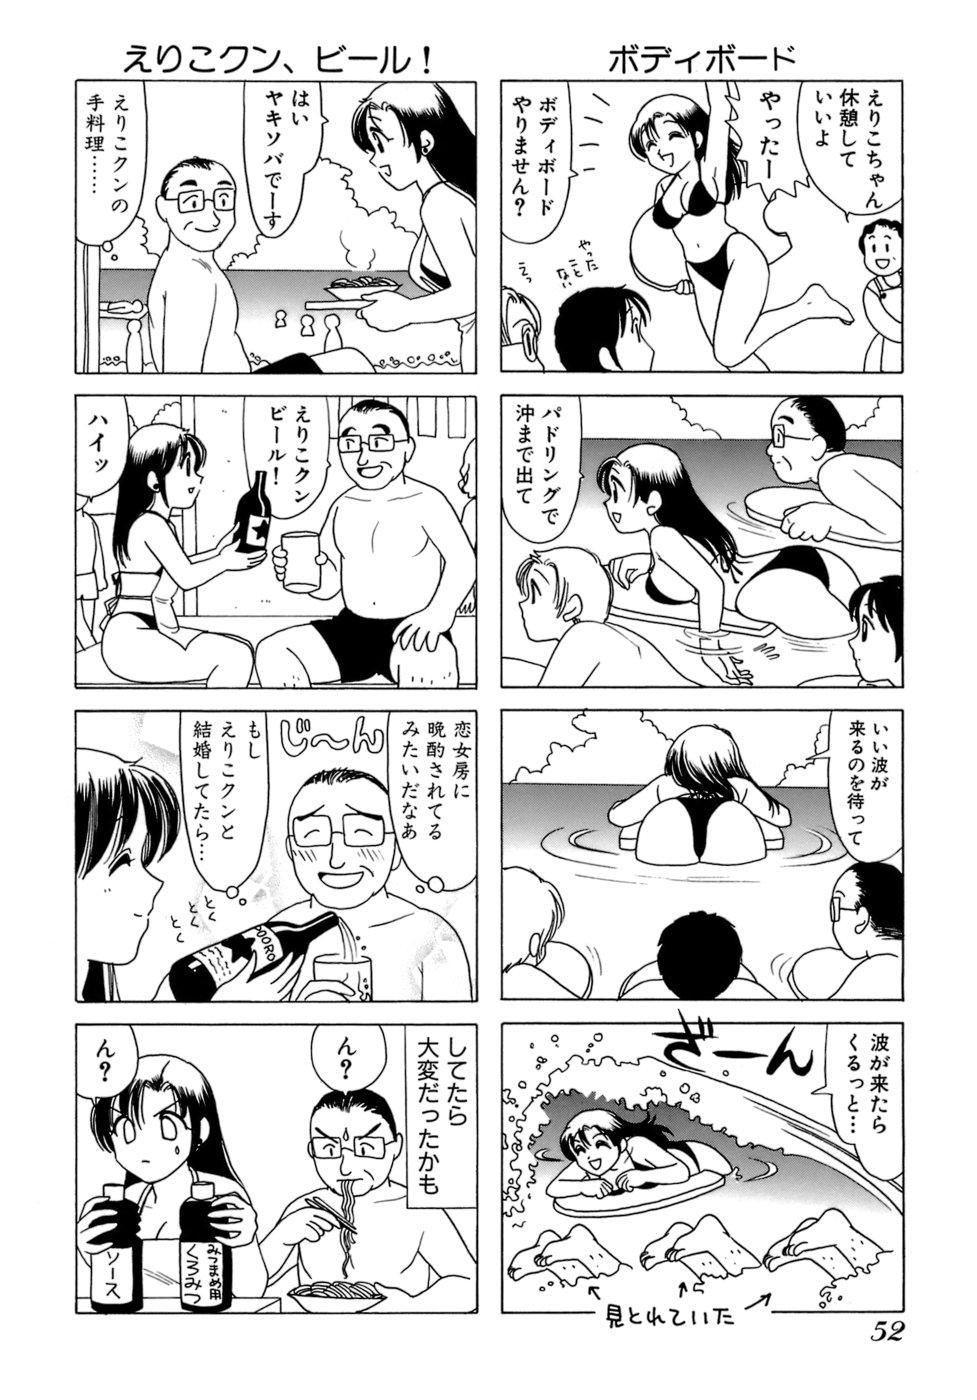 Eriko-kun, Ocha!! Vol.01 54